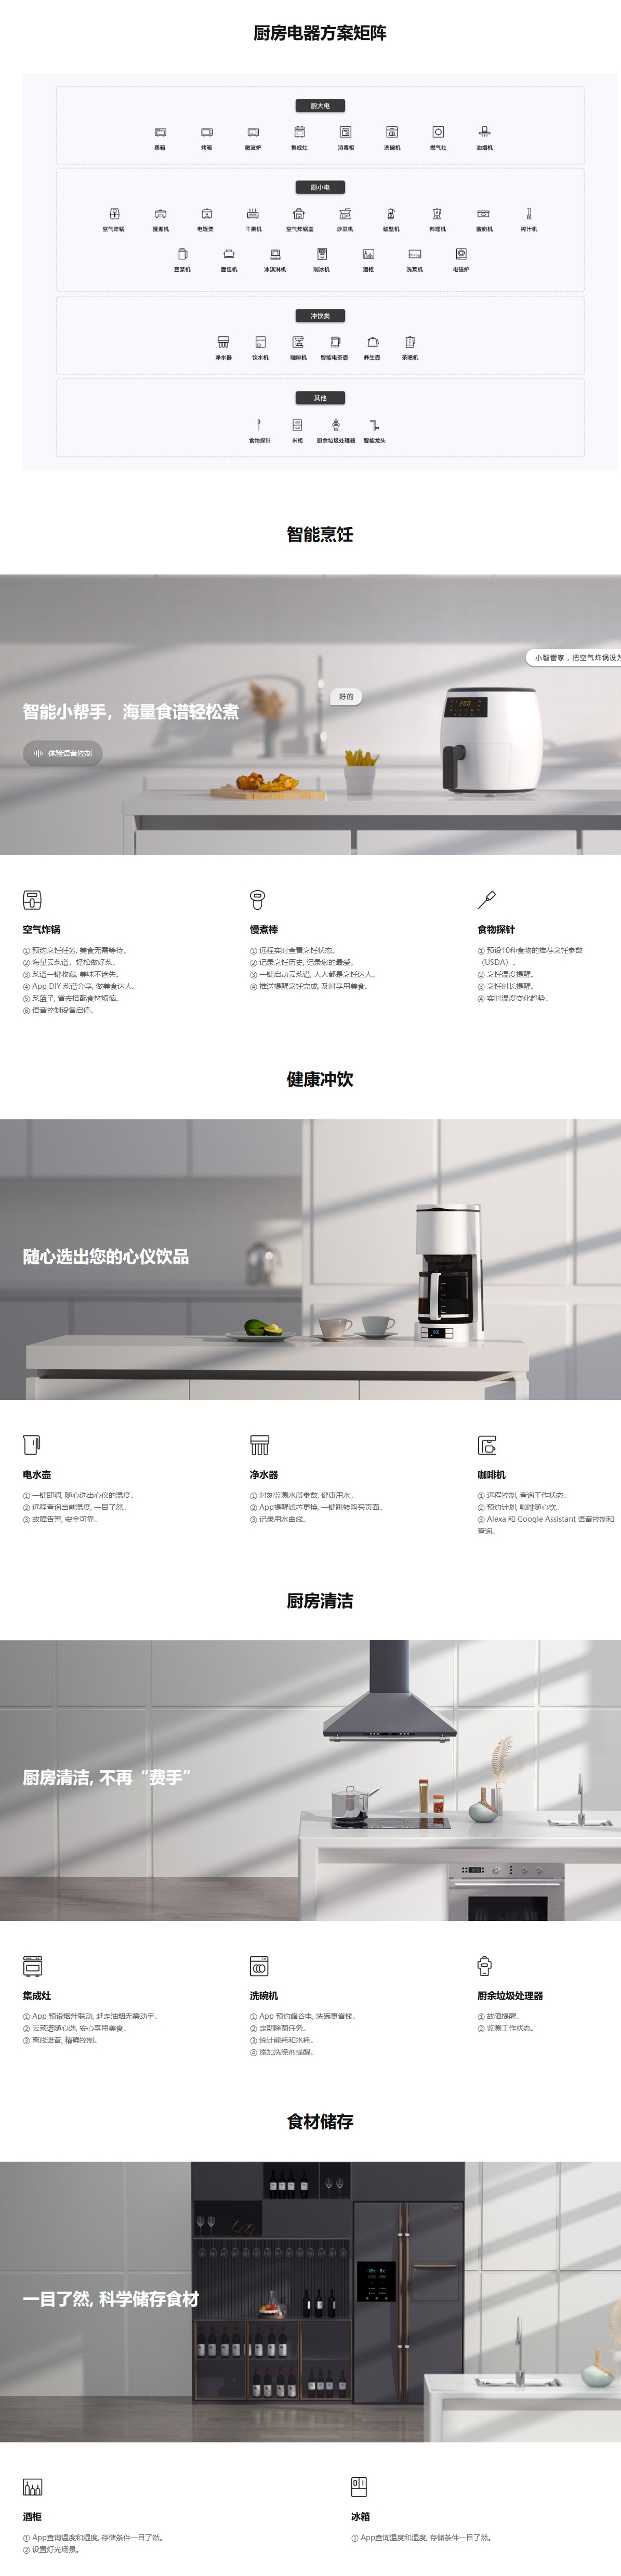 智能厨房电器解决方案 _ 智能厨房电器方案设计 - 涂鸦智能_看图王(1).jpg